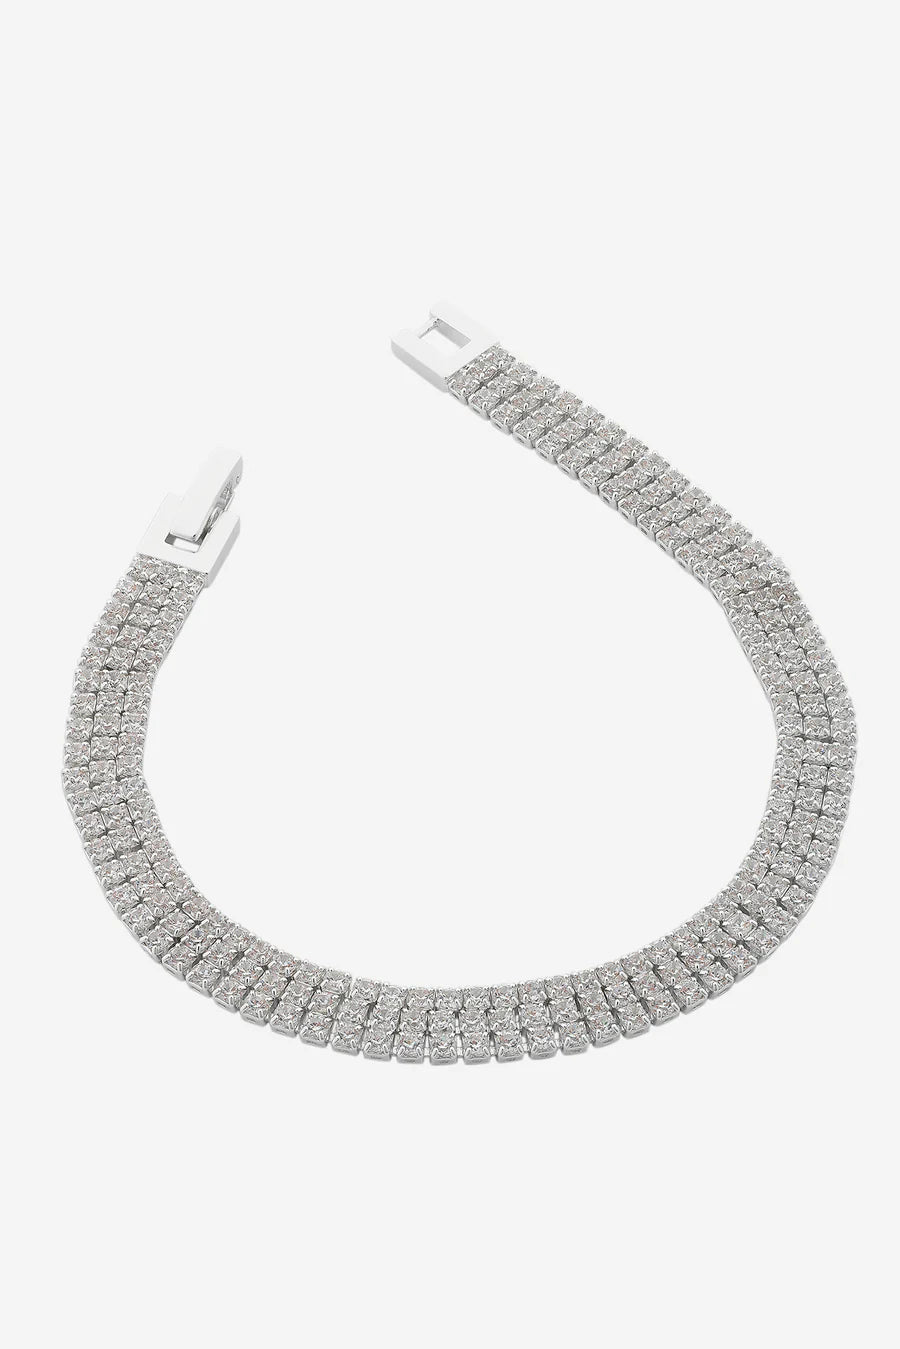 Fame Silver Bracelet-Lima & Co-Lima & Co